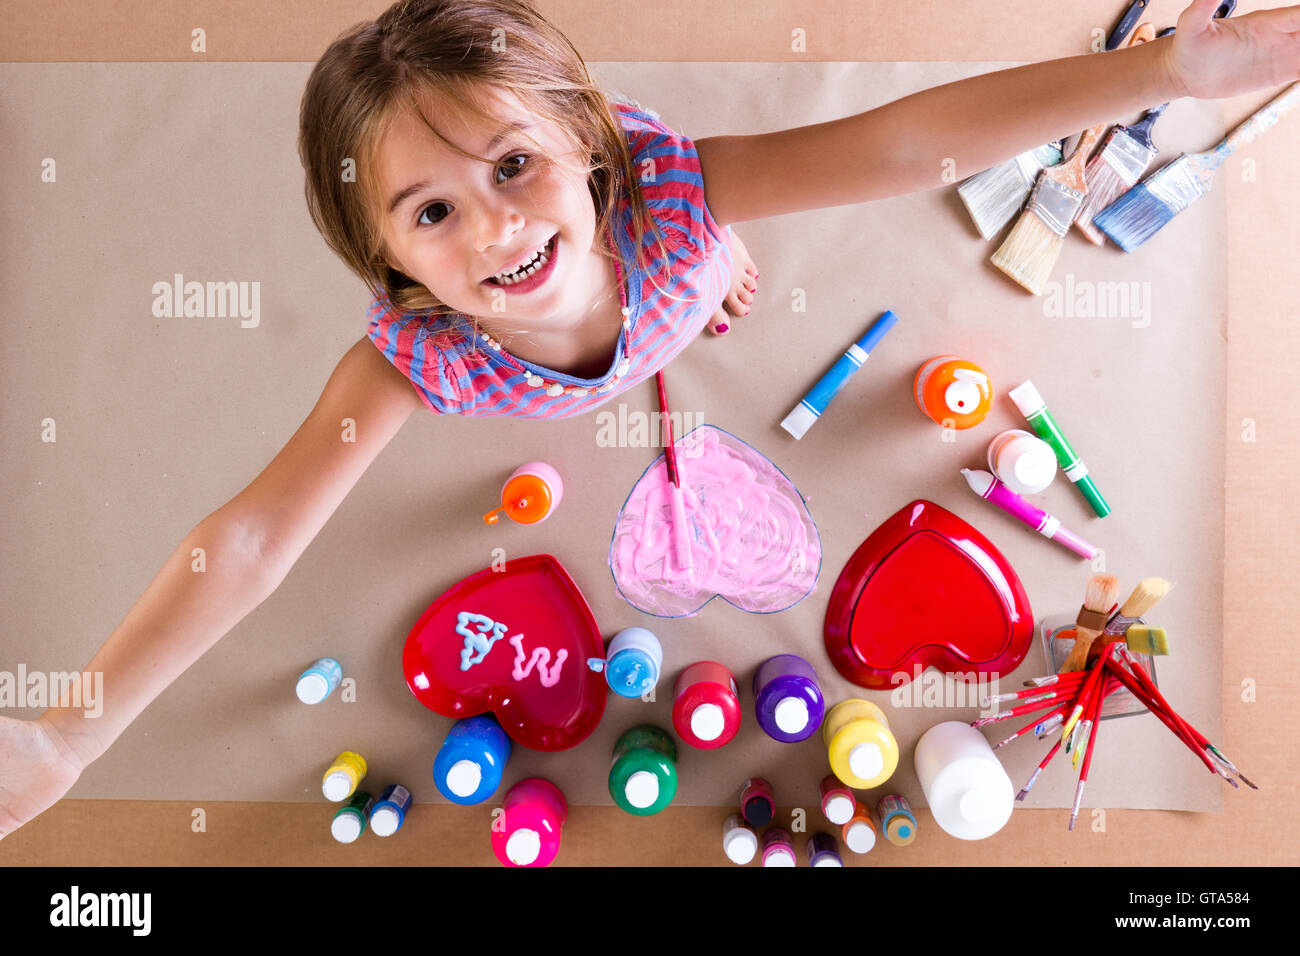 Glückliches kreative kleine Mädchen mit Farben und Pinsel, stehend nach oben auf die Kamera mit ihren ausgestreckten Armen und einem beamin Stockfoto